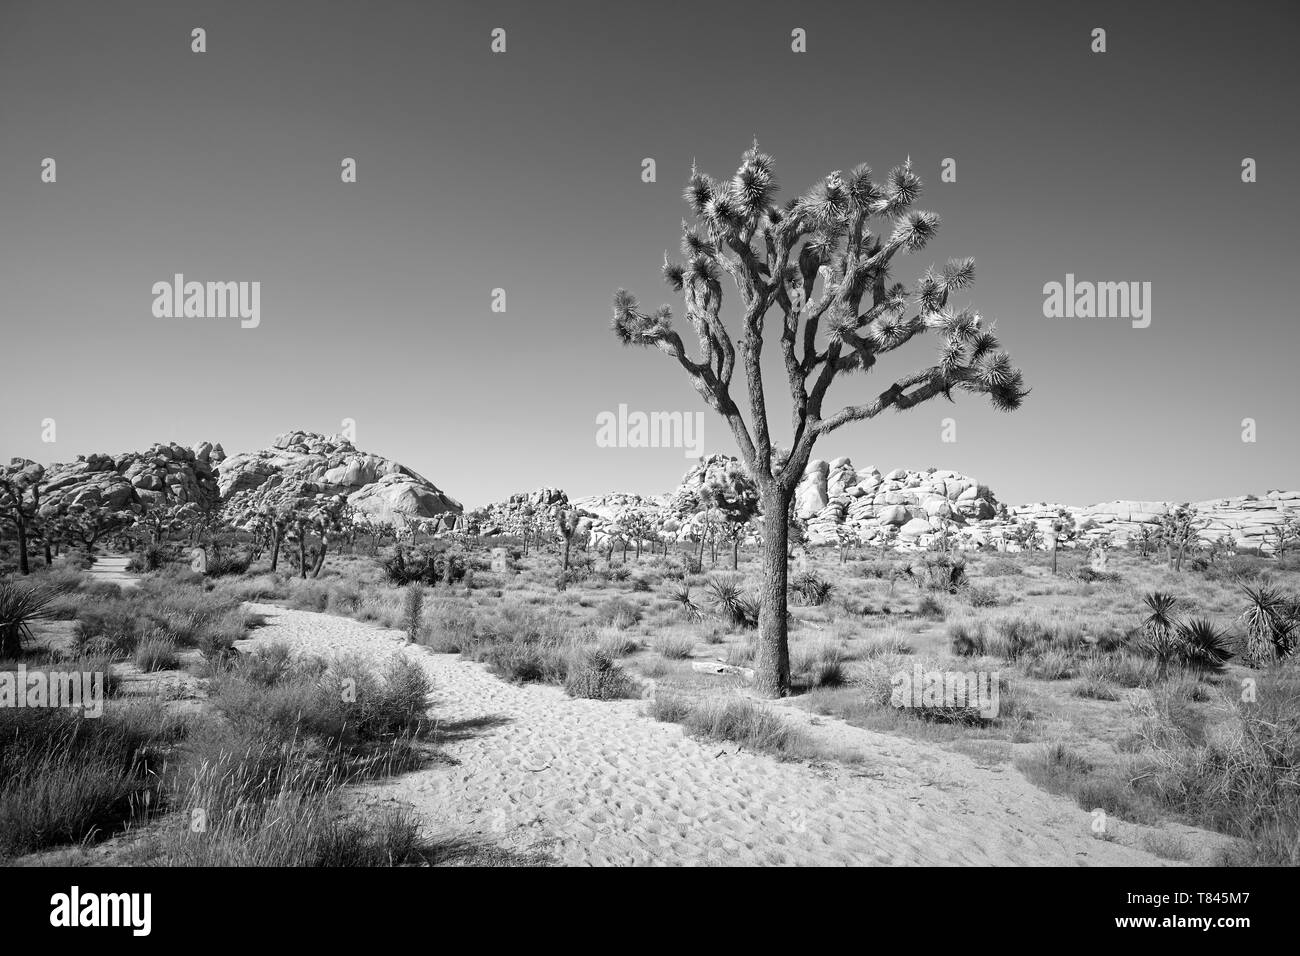 Immagine in bianco e nero del Parco nazionale di Joshua Tree paesaggio, California, America. Foto Stock